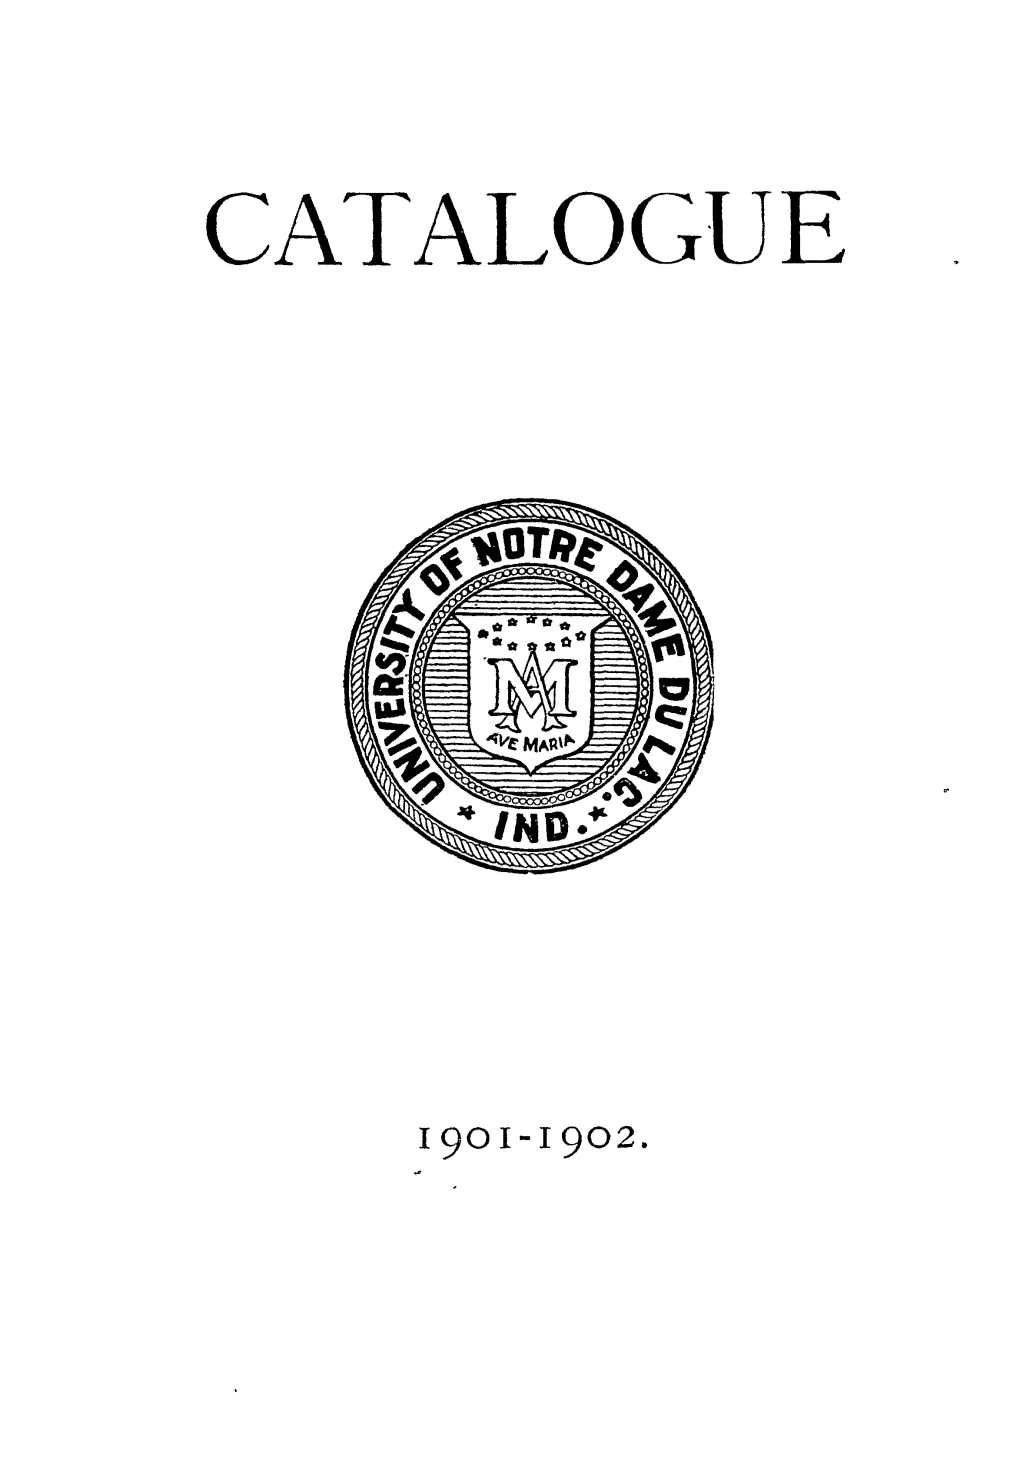 See 1901/1902 Catalogue